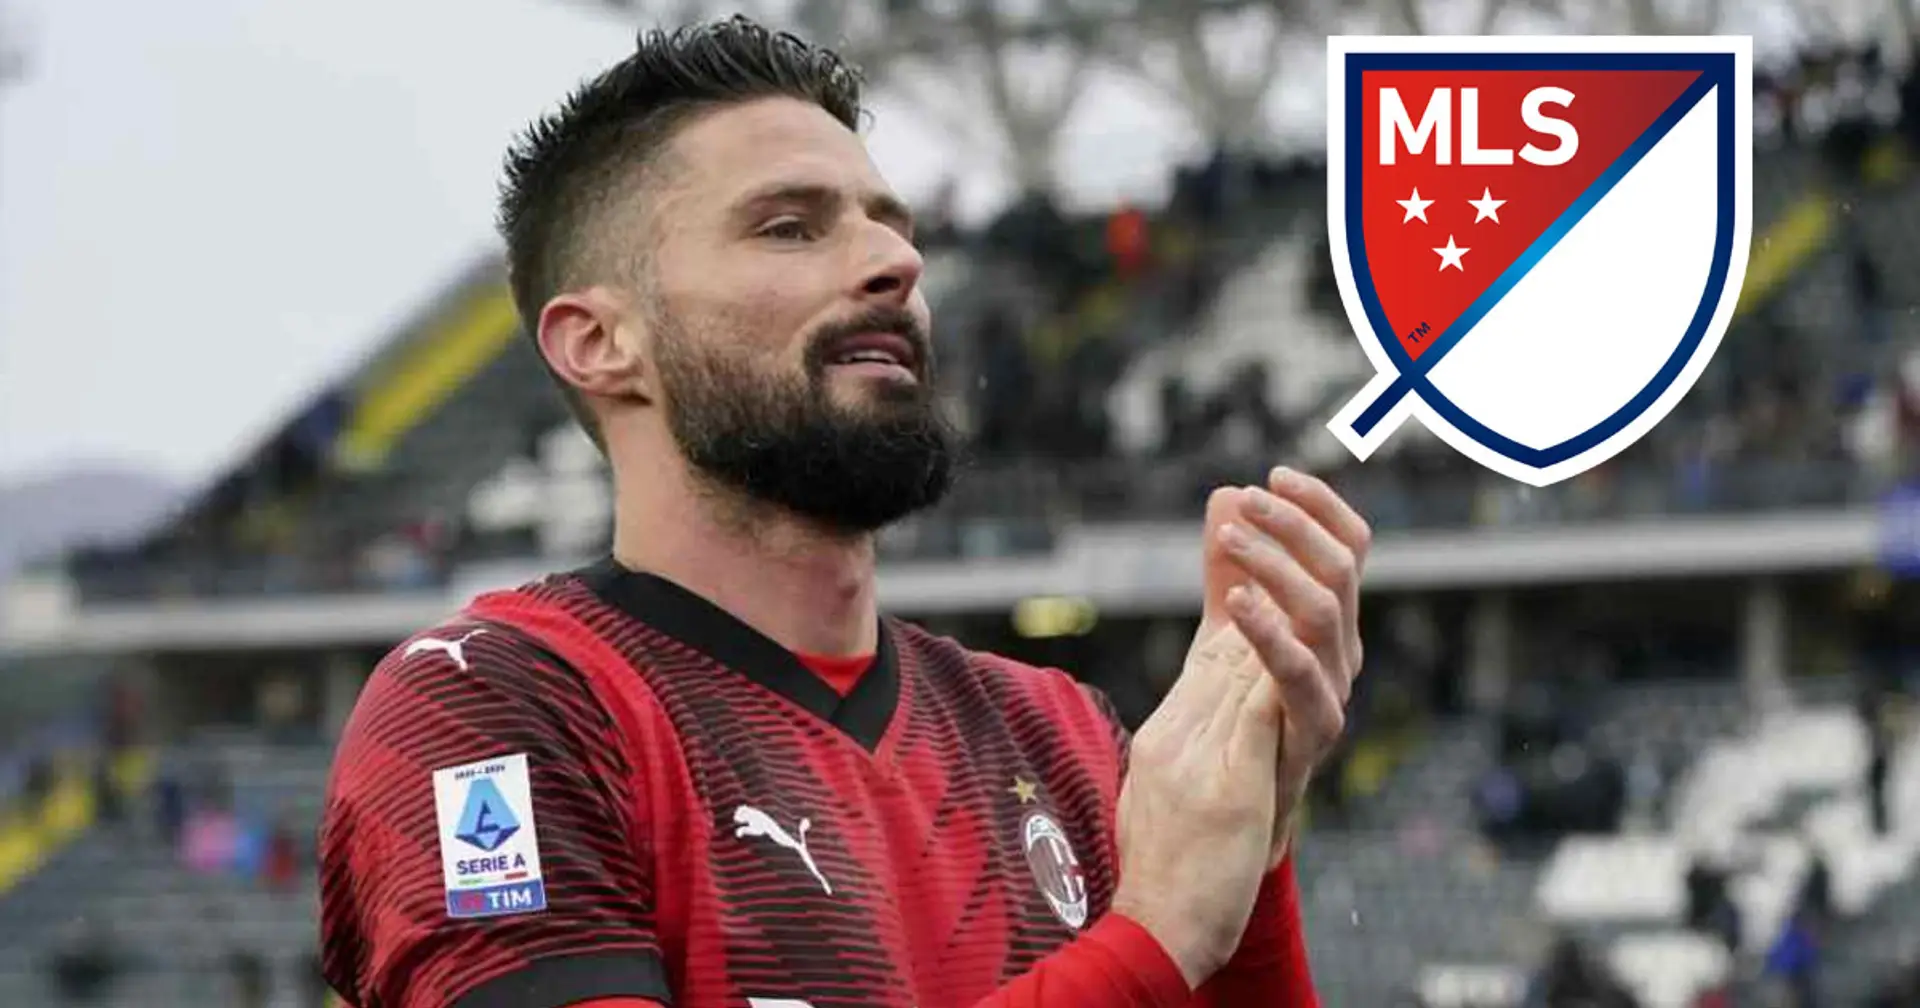 La MLS torna all'assalto di Giroud: il futuro del centravanti è in bilico tra Milan e USA